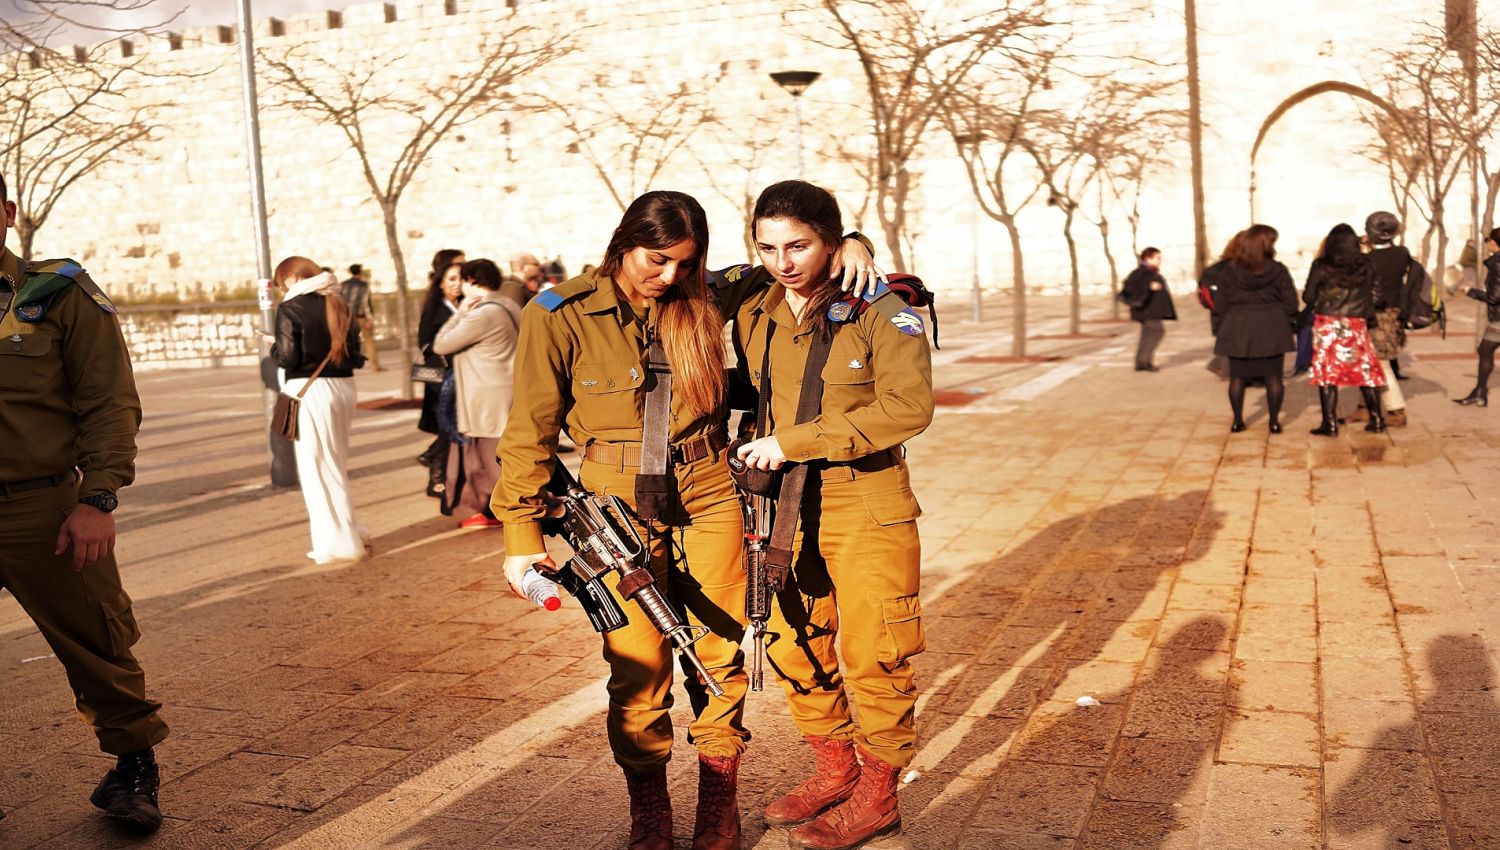 تجنيد النساء في جيش الاحتلال: فضائح وثغرات!